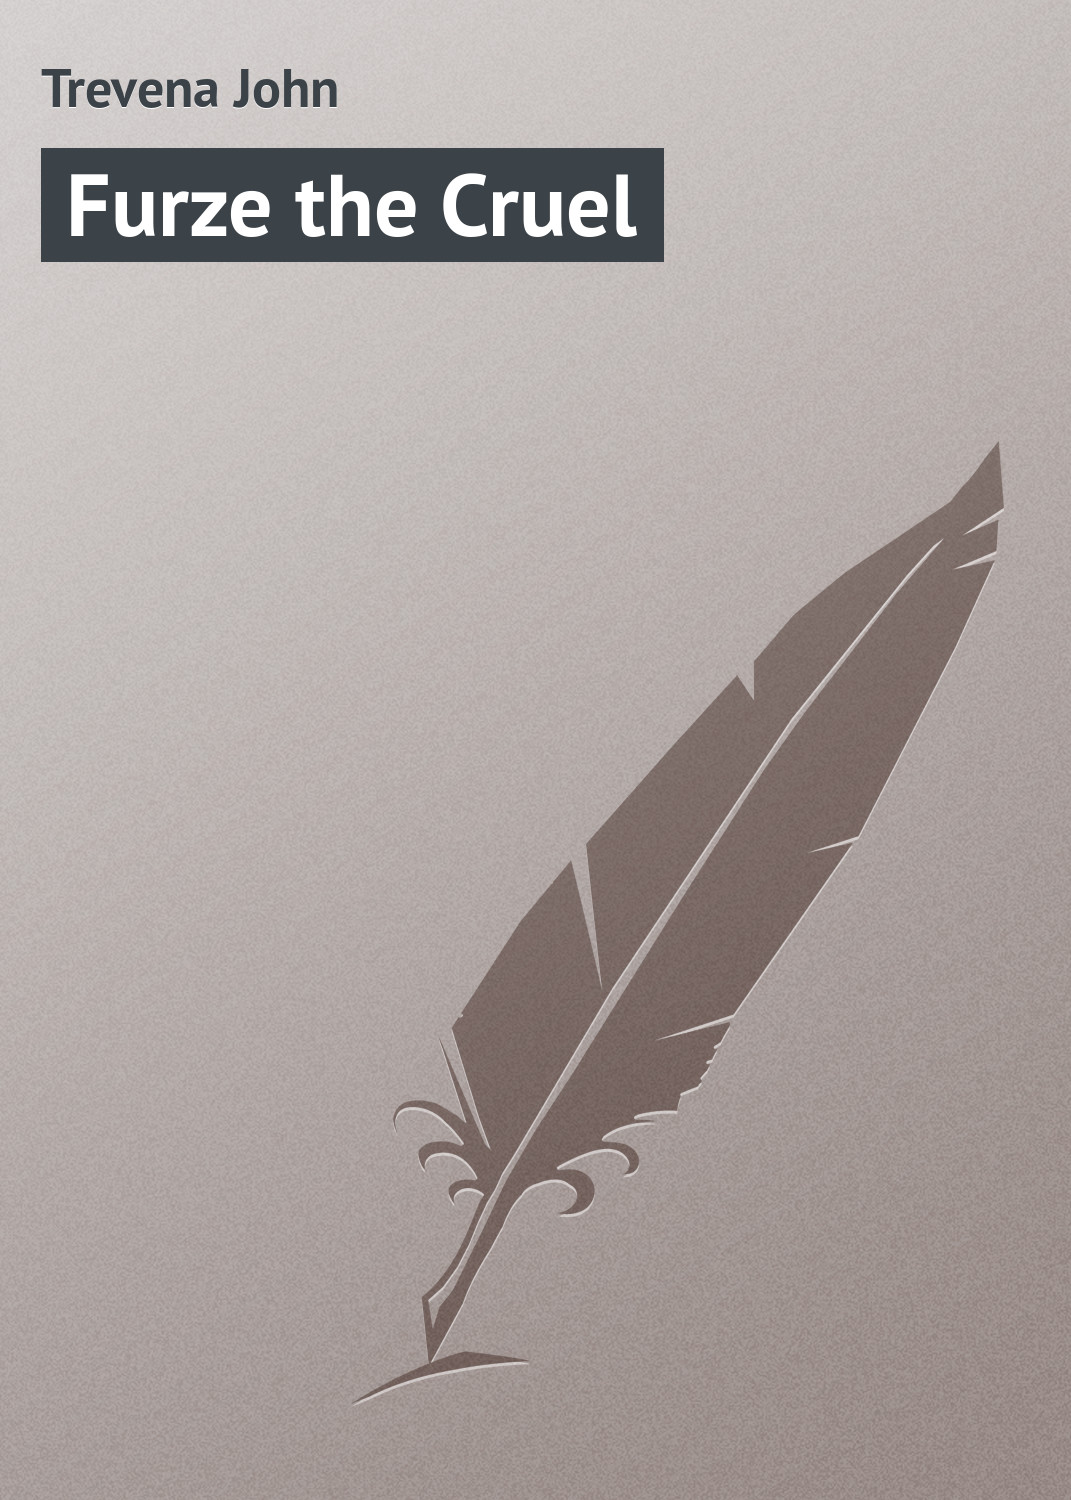 Книга Furze the Cruel из серии , созданная John Trevena, может относится к жанру Зарубежная классика. Стоимость электронной книги Furze the Cruel с идентификатором 23157715 составляет 5.99 руб.